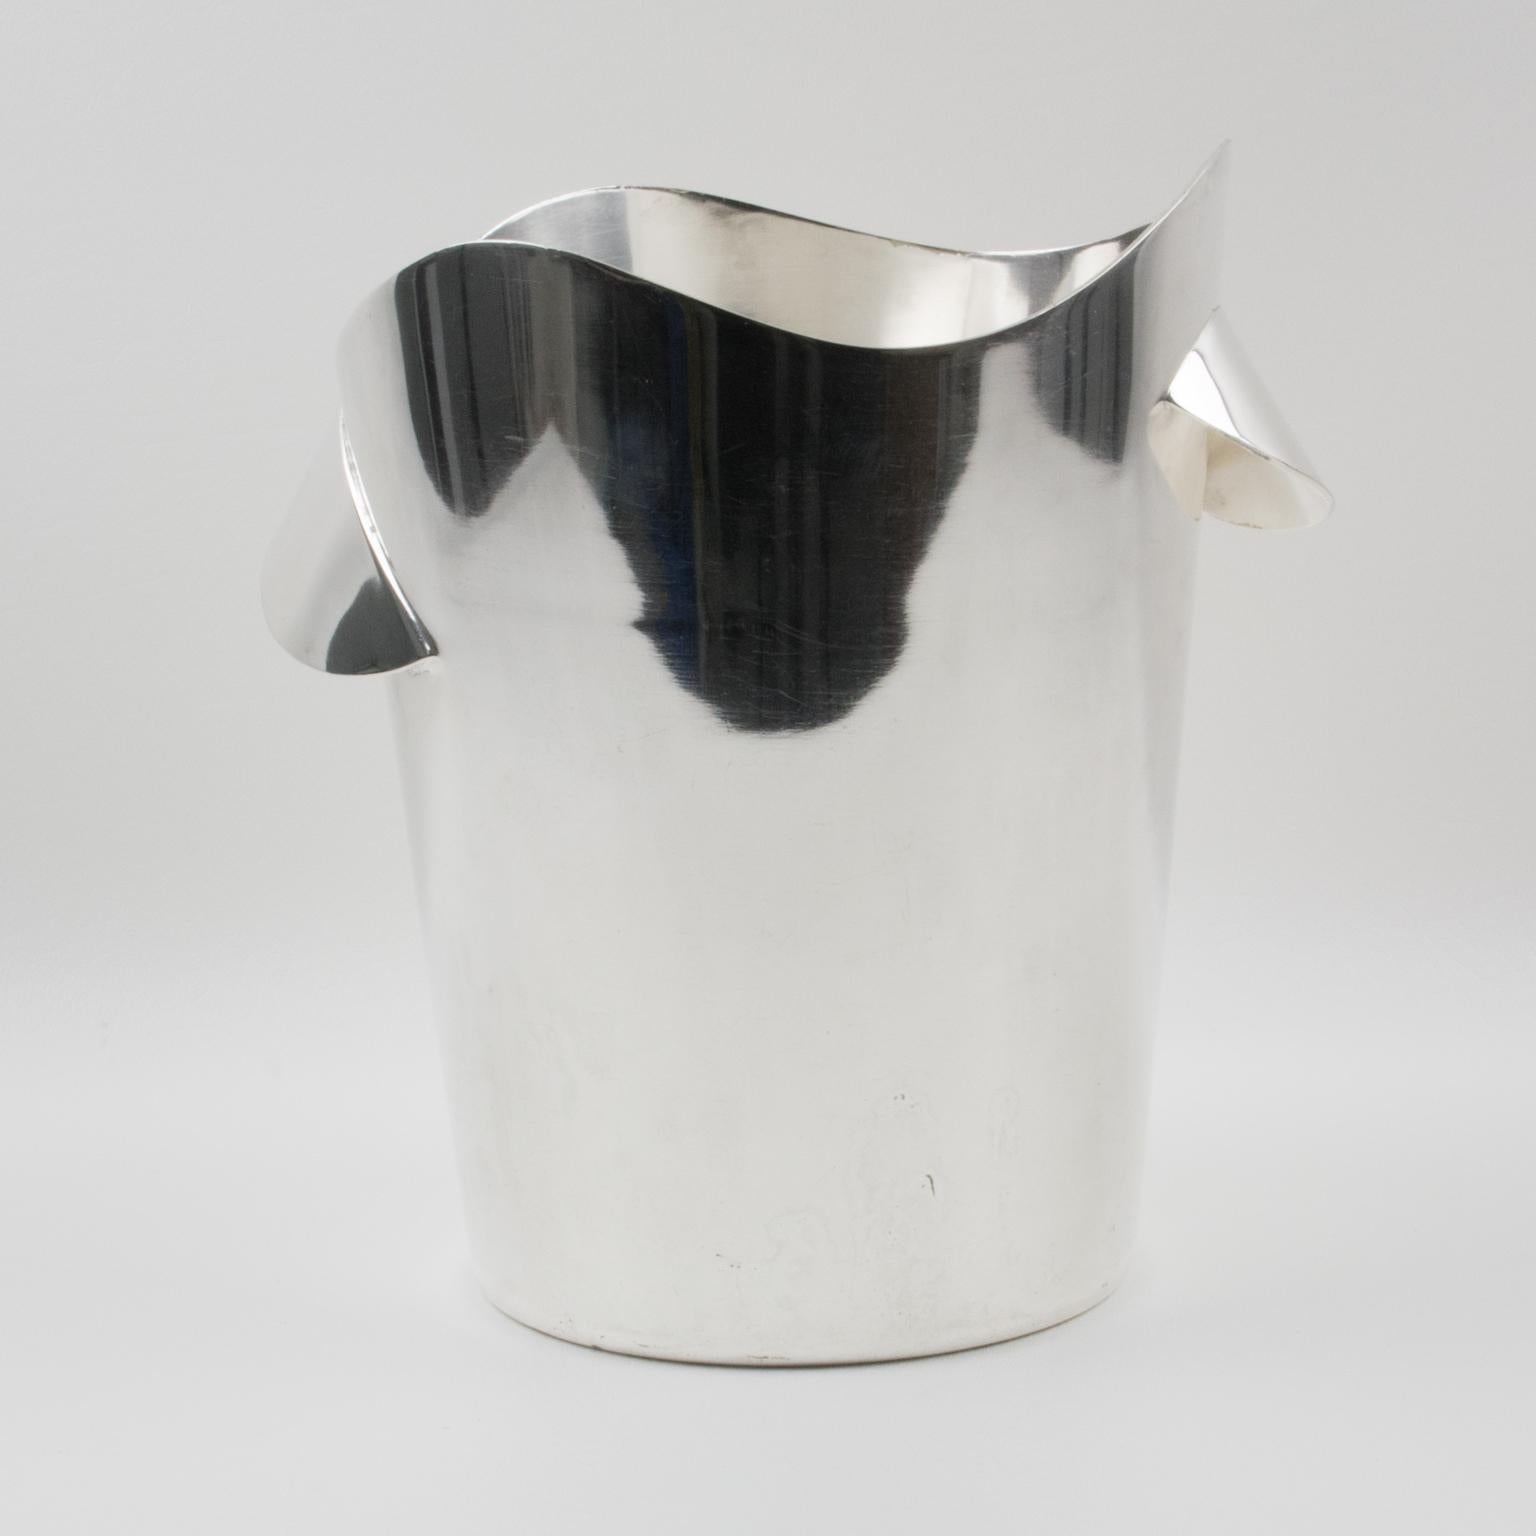 Dieser modernistische Eiskübel oder -kühler von Wiskemann aus Silberblech ist ein exquisites Stück Bargeschirr aus der Mitte des Jahrhunderts. Das elegante Design des von der belgischen Silberschmiede Wiskemann gefertigten Schmuckstücks mit seiner